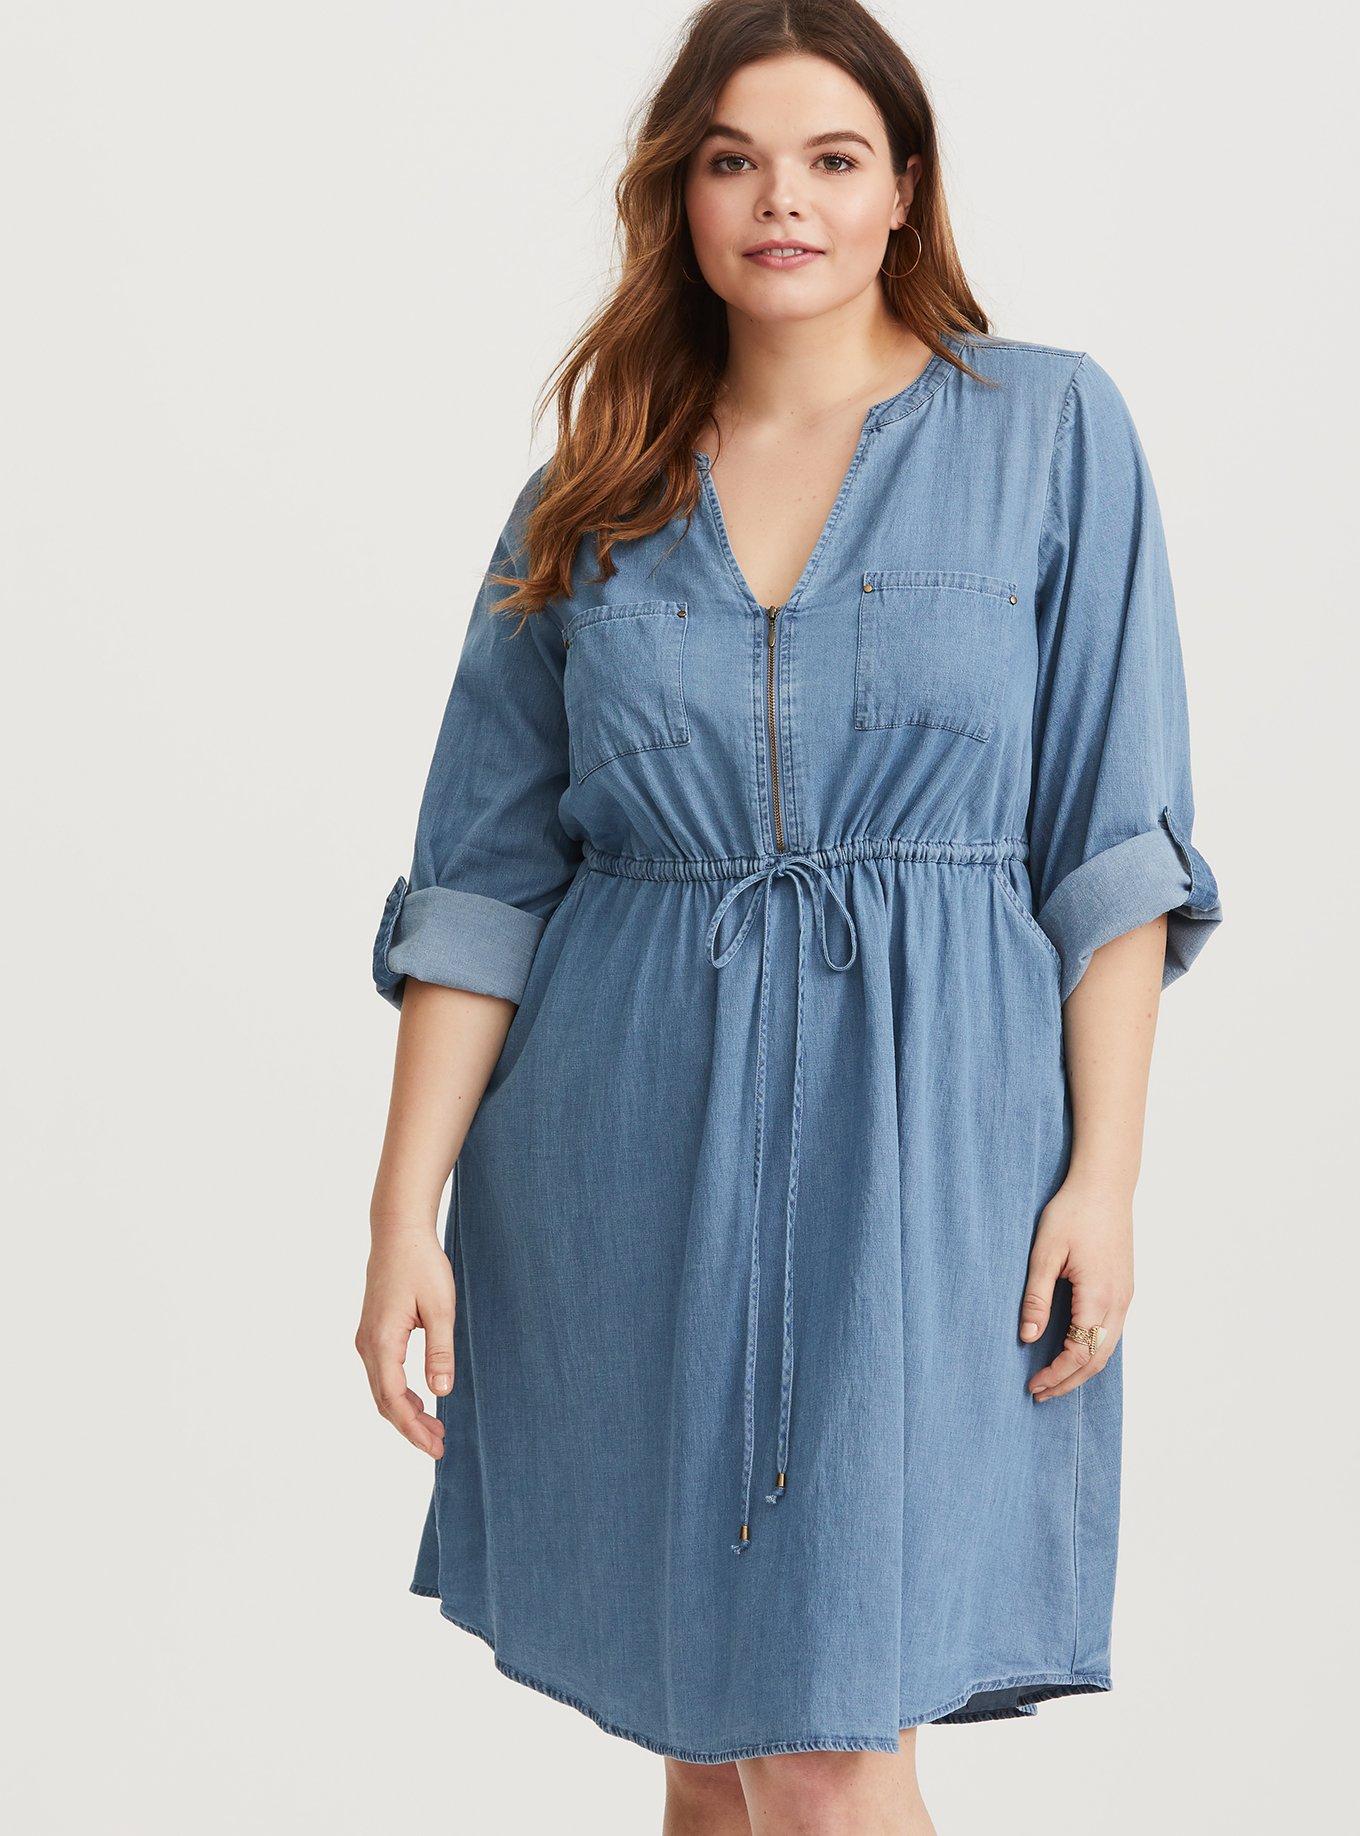 NWT Torrid 5 Blue Mini Textured Rayon Shirt Dress; Plus Size Women's 5X,  28, 28W